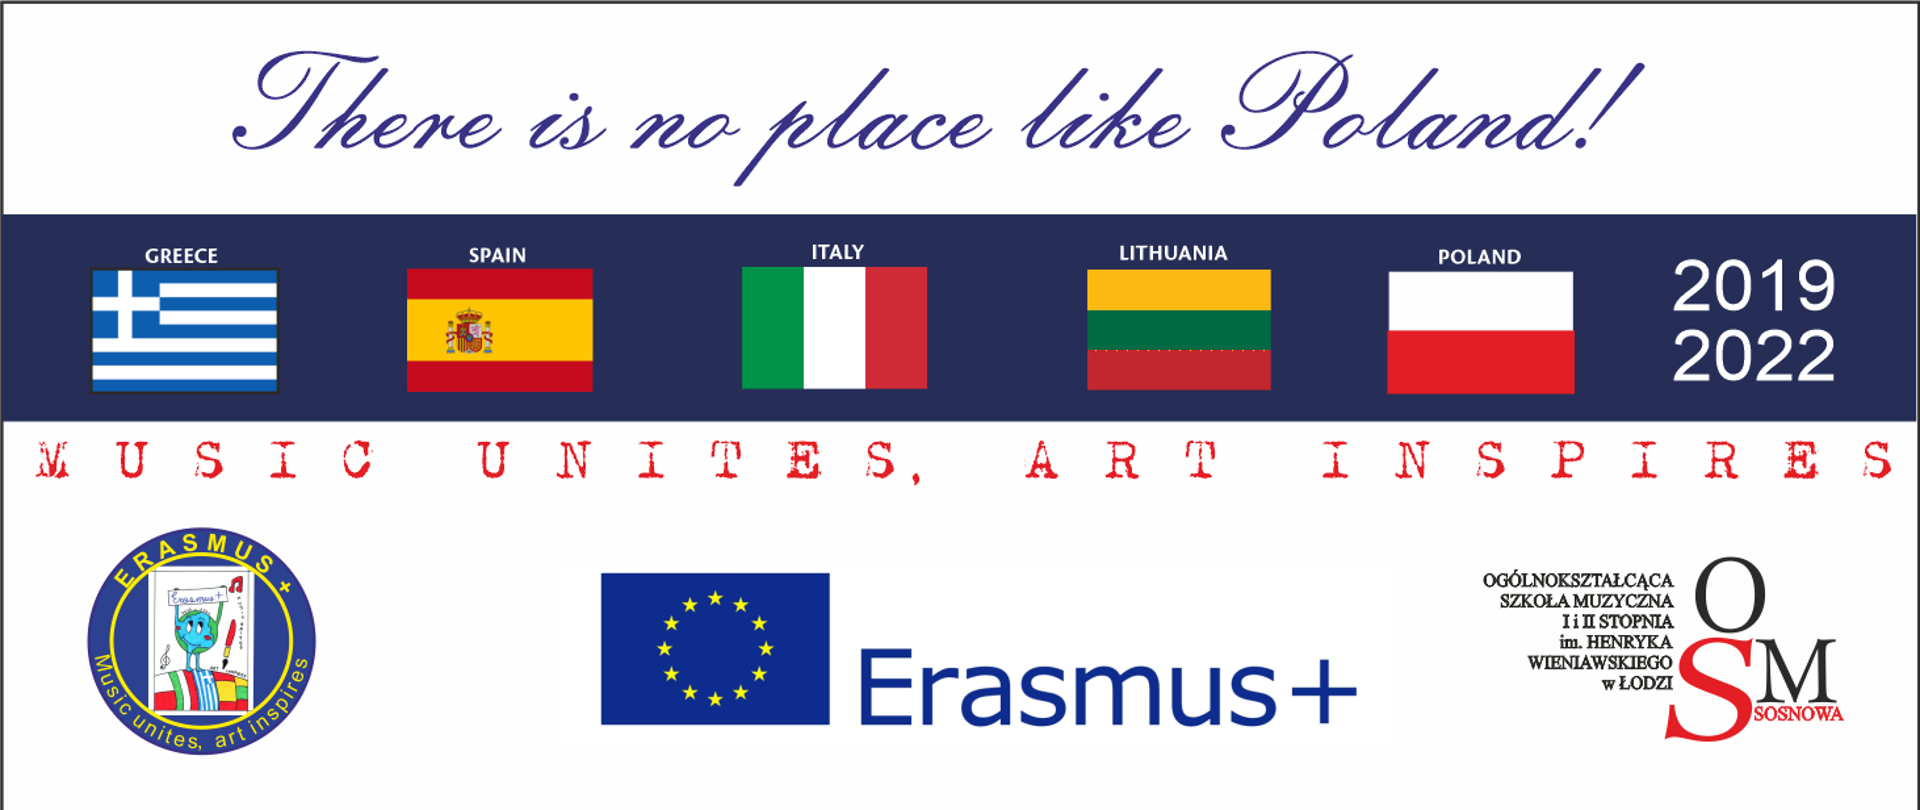 Plakat przedstawia w górnej części na białym tle niebieski napis There is no place like Poland. Poniżej na ciemnoniebieskim tle umieszczone są flagi państw biorących udział w programie Erasmus plus, są to flagi Grecji, Hiszpanii, Włoch, Litwy oraz Polski. Poniżej na białym tle widnieje czerwony napis Music Unites, Art Inspires. W dolnej części plakatu są umieszczone trzy loga, logo mobilności Erasmus plus, logo Erasmus plus oraz logo Ogólnokształcącej Szkoły Muzycznej im. Henryka Wieniawskiego w Łodzi.